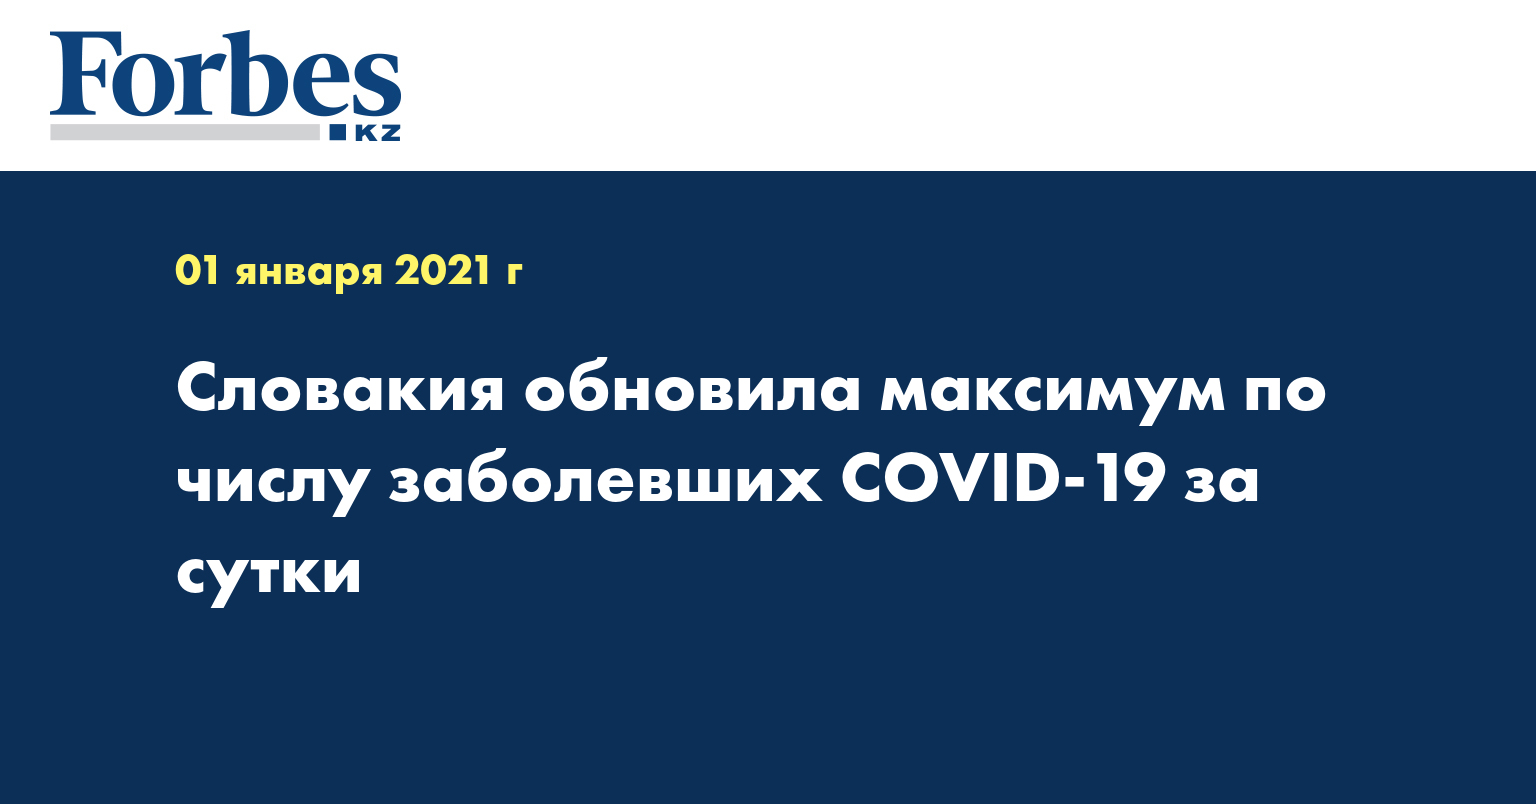 Словакия обновила максимум по числу заболевших COVID-19 за сутки